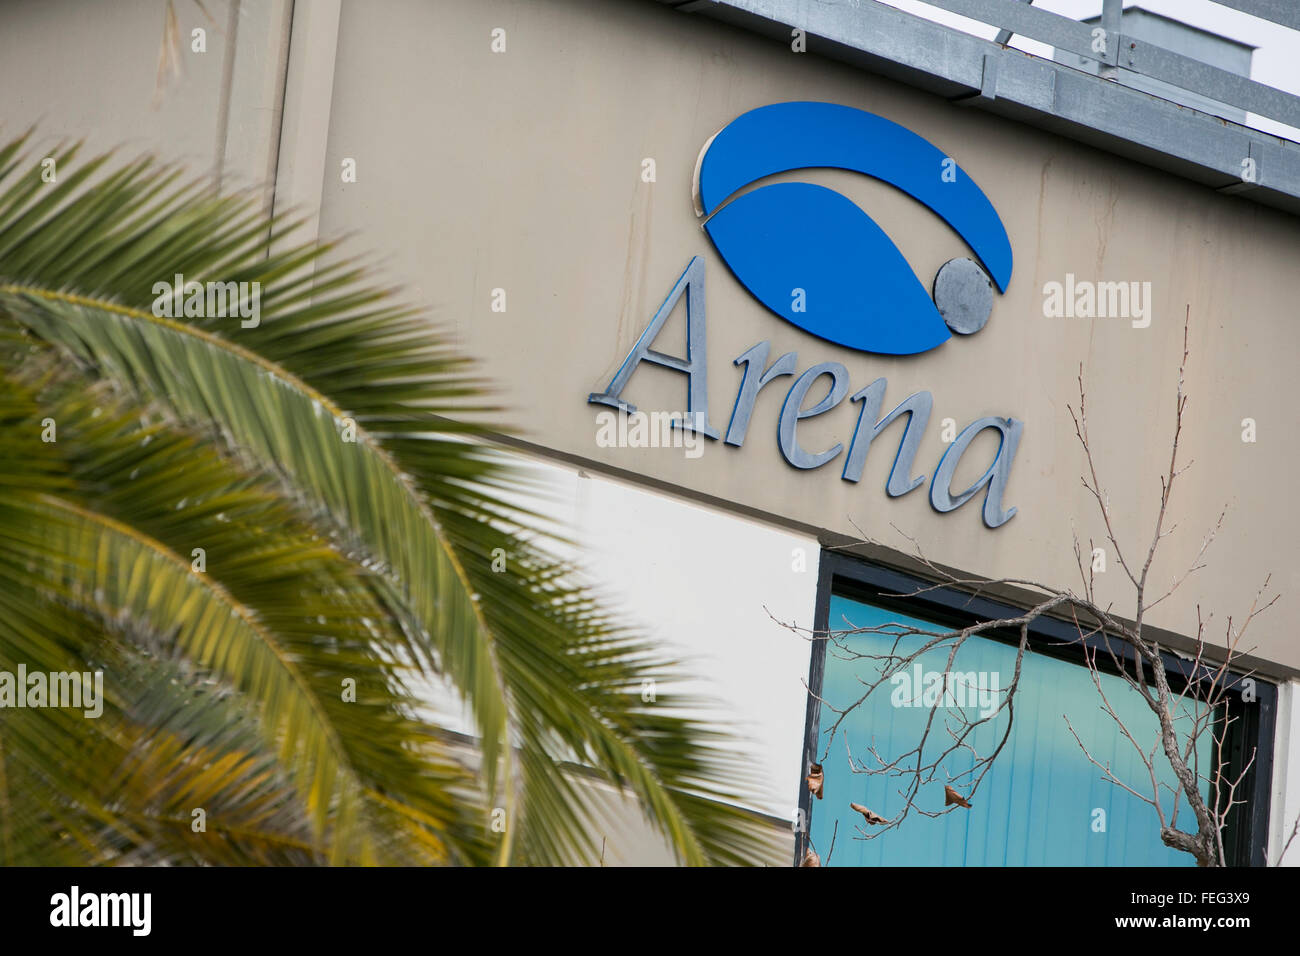 Un logo affiche à l'extérieur du siège de l'Arena Pharmaceuticals, Inc., à San Diego, Californie le 30 janvier 2016. Banque D'Images